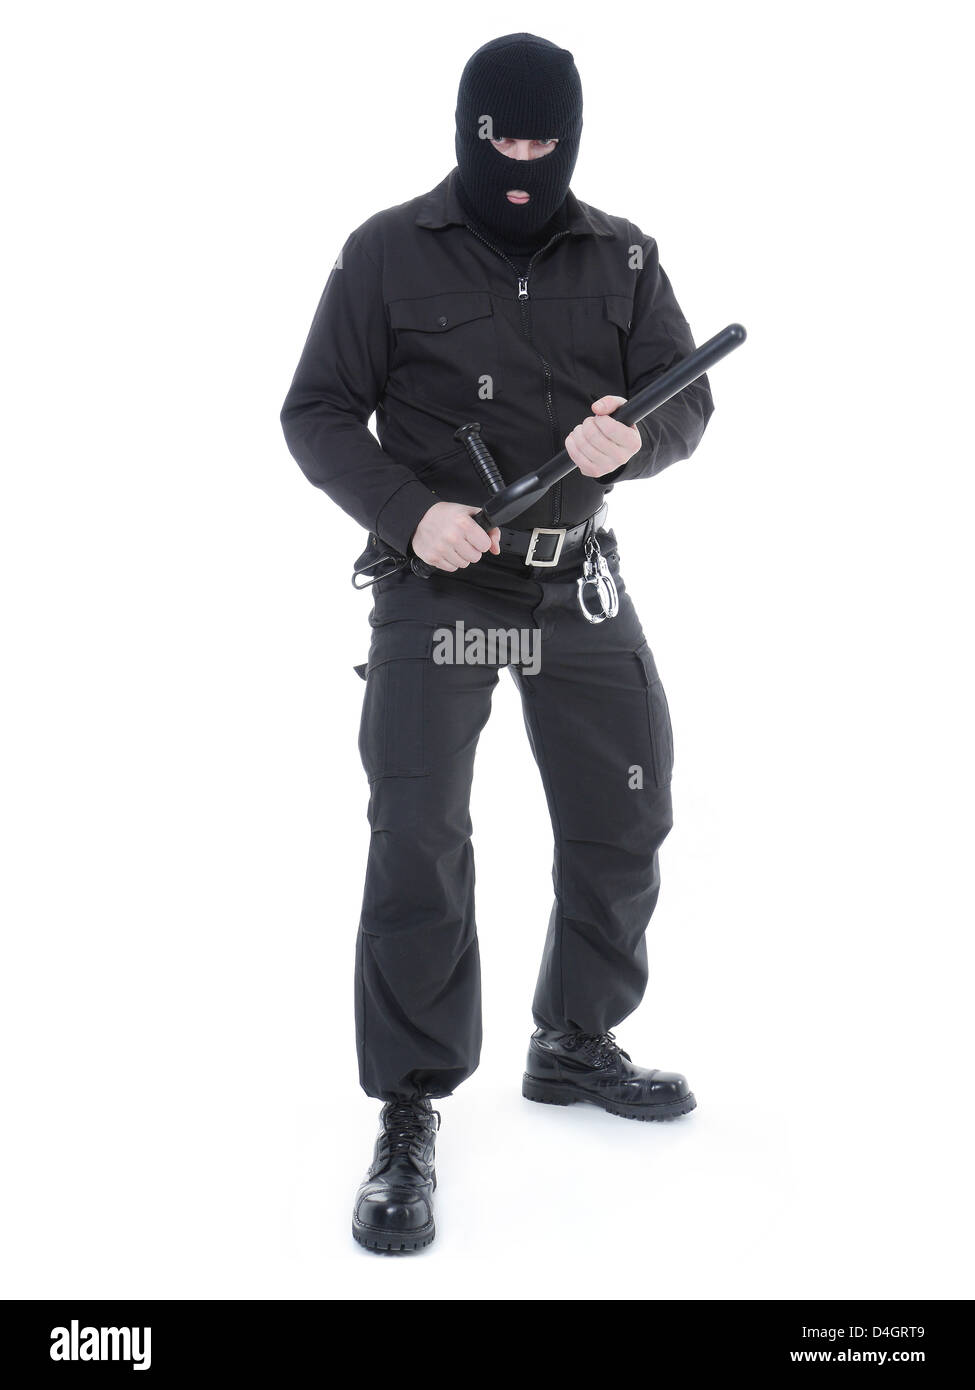 La police antiterroriste mec uniforme noir et black mask holding police club fermement à deux mains prêt pour l'action Banque D'Images